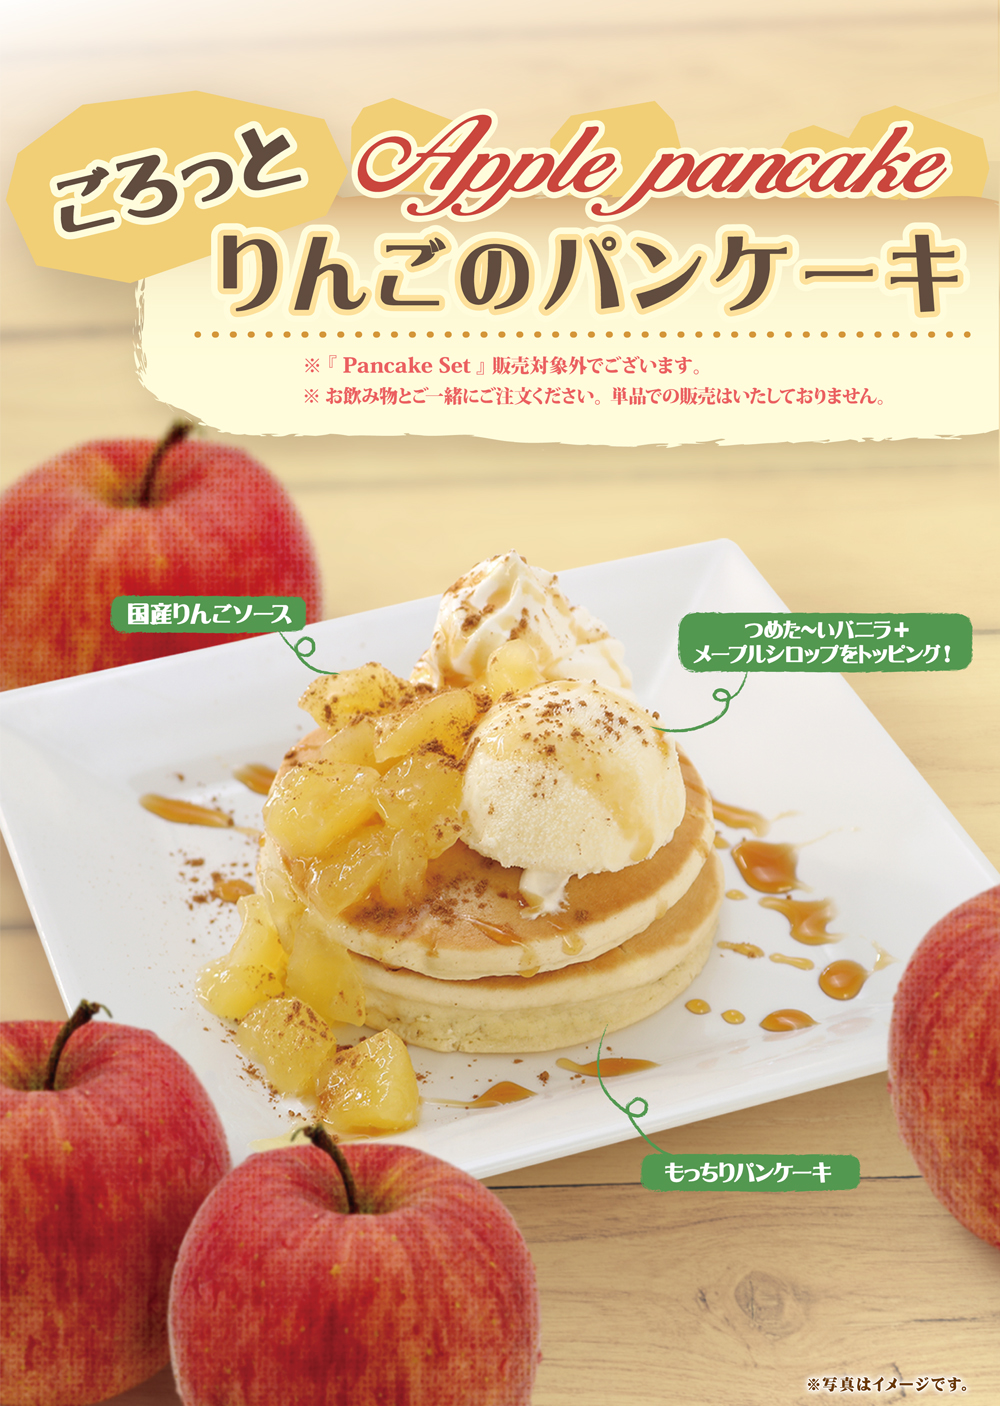 新宿京王モール店 8月15日開始 期間限定パンケーキメニュー インフォメーション Cafeルノアール